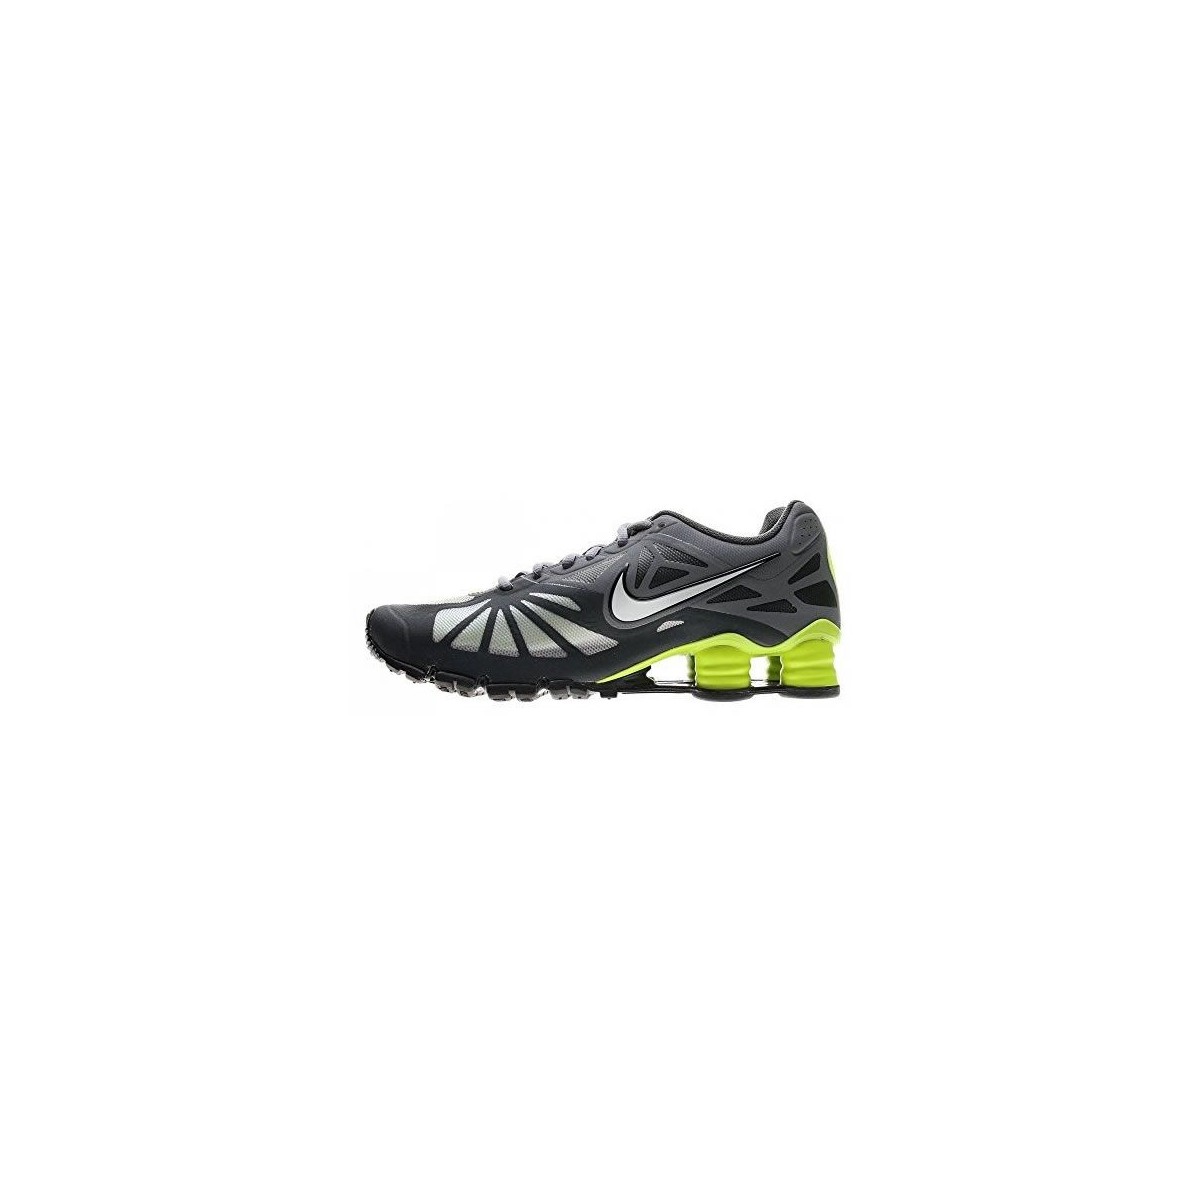 Organo evolución Gama de Shoes Nike Shox Turbo 14 631760 007